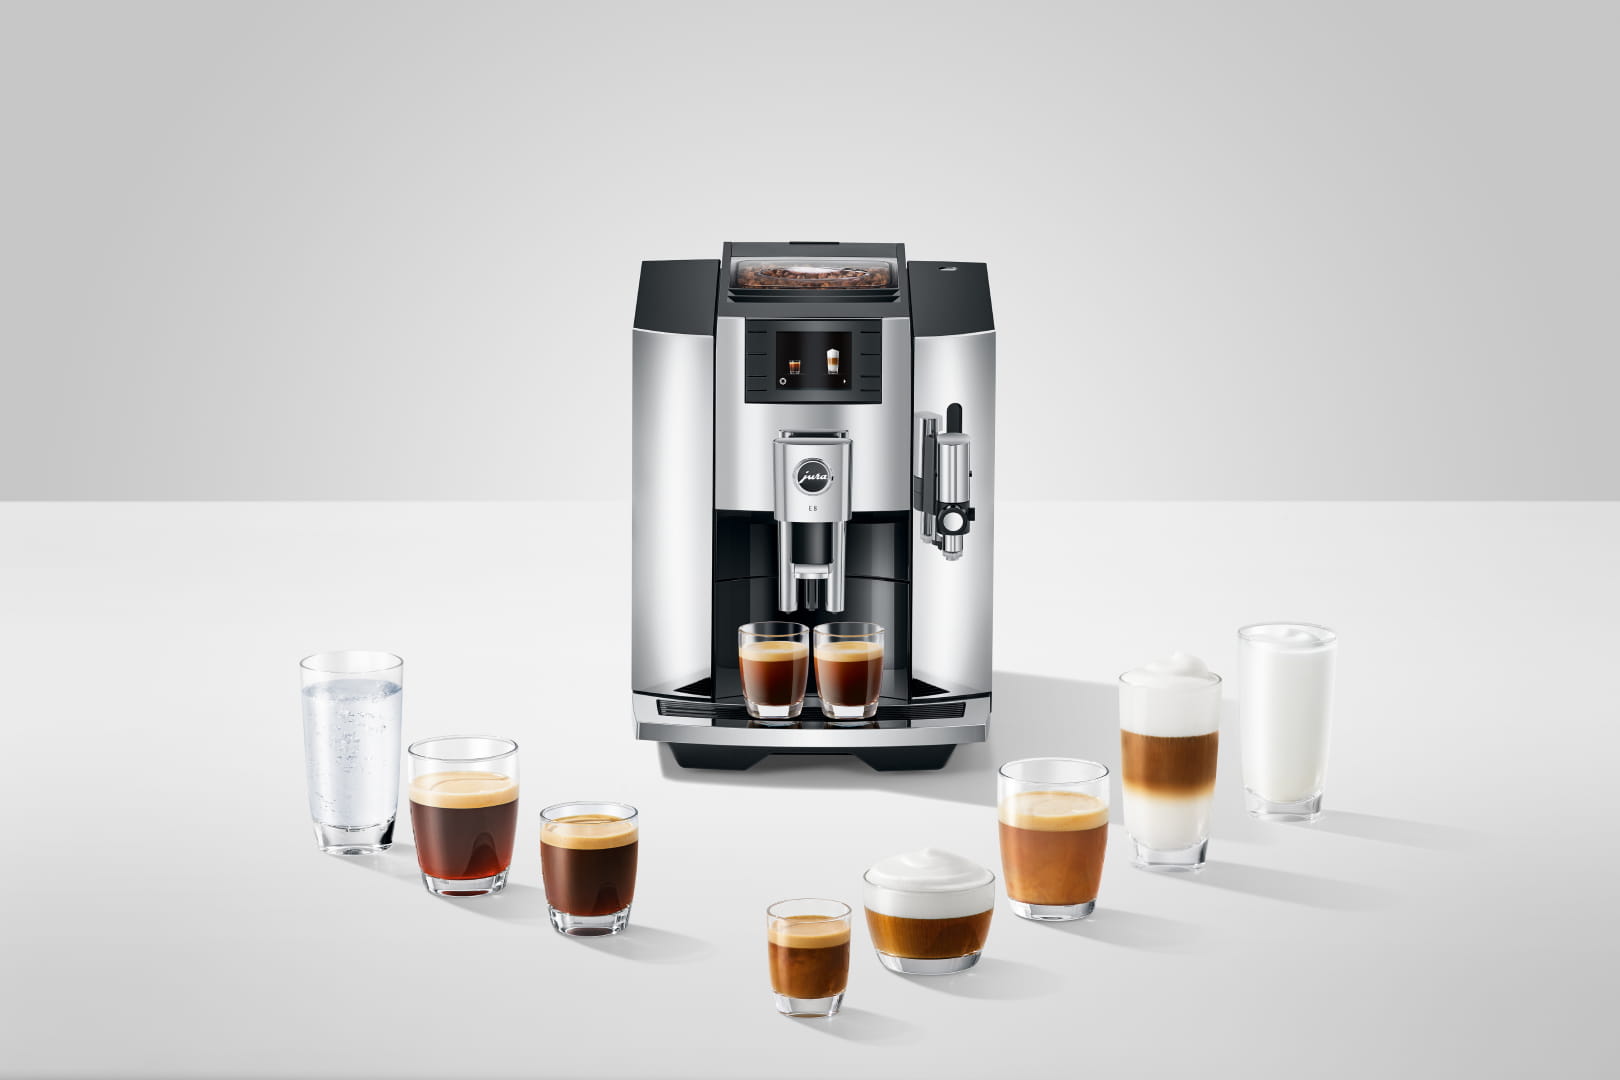 Machine à café Jura E8 - Café grain